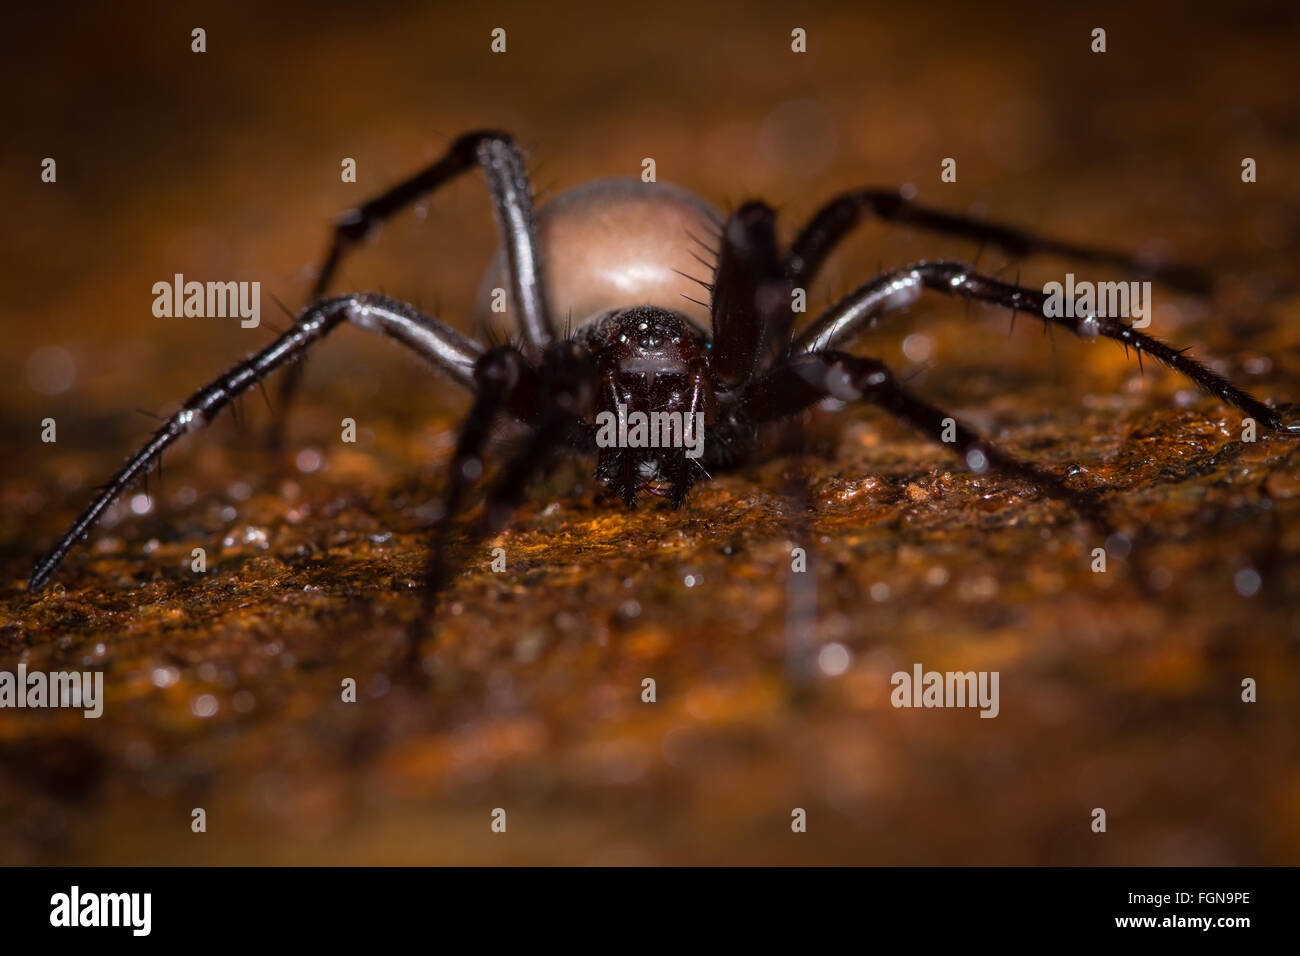 Grotte de l'araignée (Meta menardi) femelle adulte dans la famille Tetragnathidae, vu de devant sur un couvercle de vidange Banque D'Images